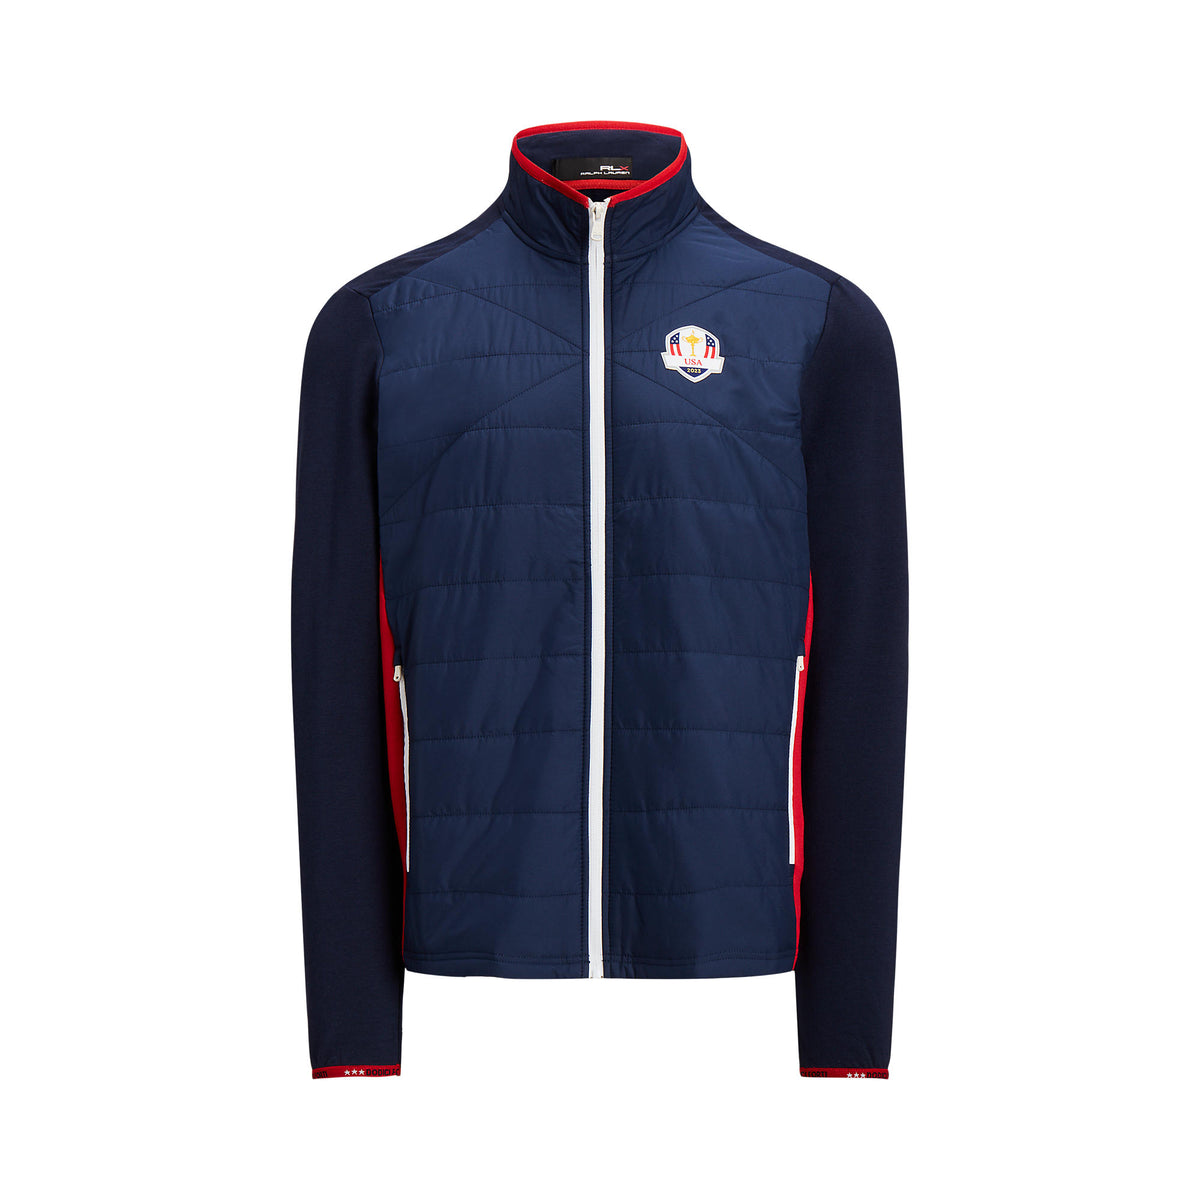 Ralph Lauren 2023 Ryder Cup Official Team Uniform Full Zip Jacket in Navy